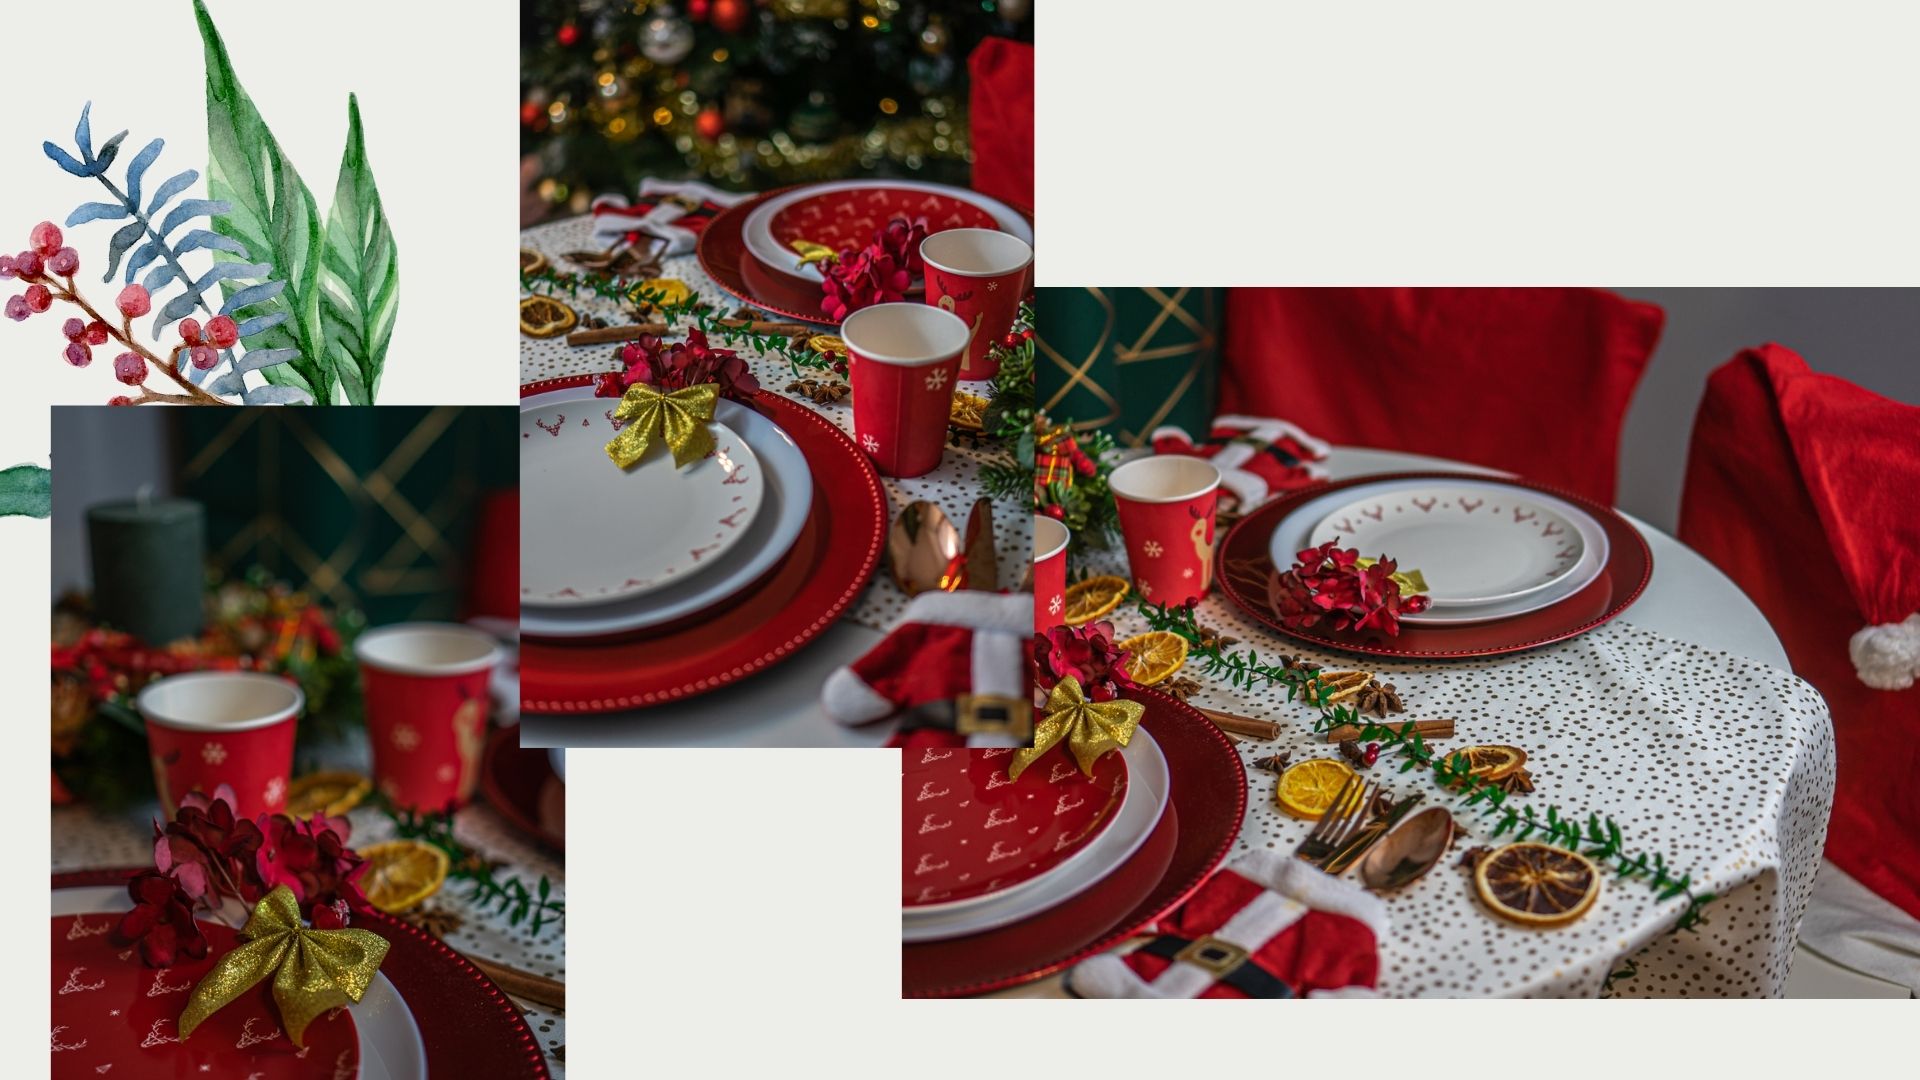 jak udekorować stół mieszkanie na swieta na boze narodzenie i wiglię pomysły na dekoracje świąteczne świąteczne talerze kubki obrus wieniec swiateczny na stół stroik dodatki świąteczne